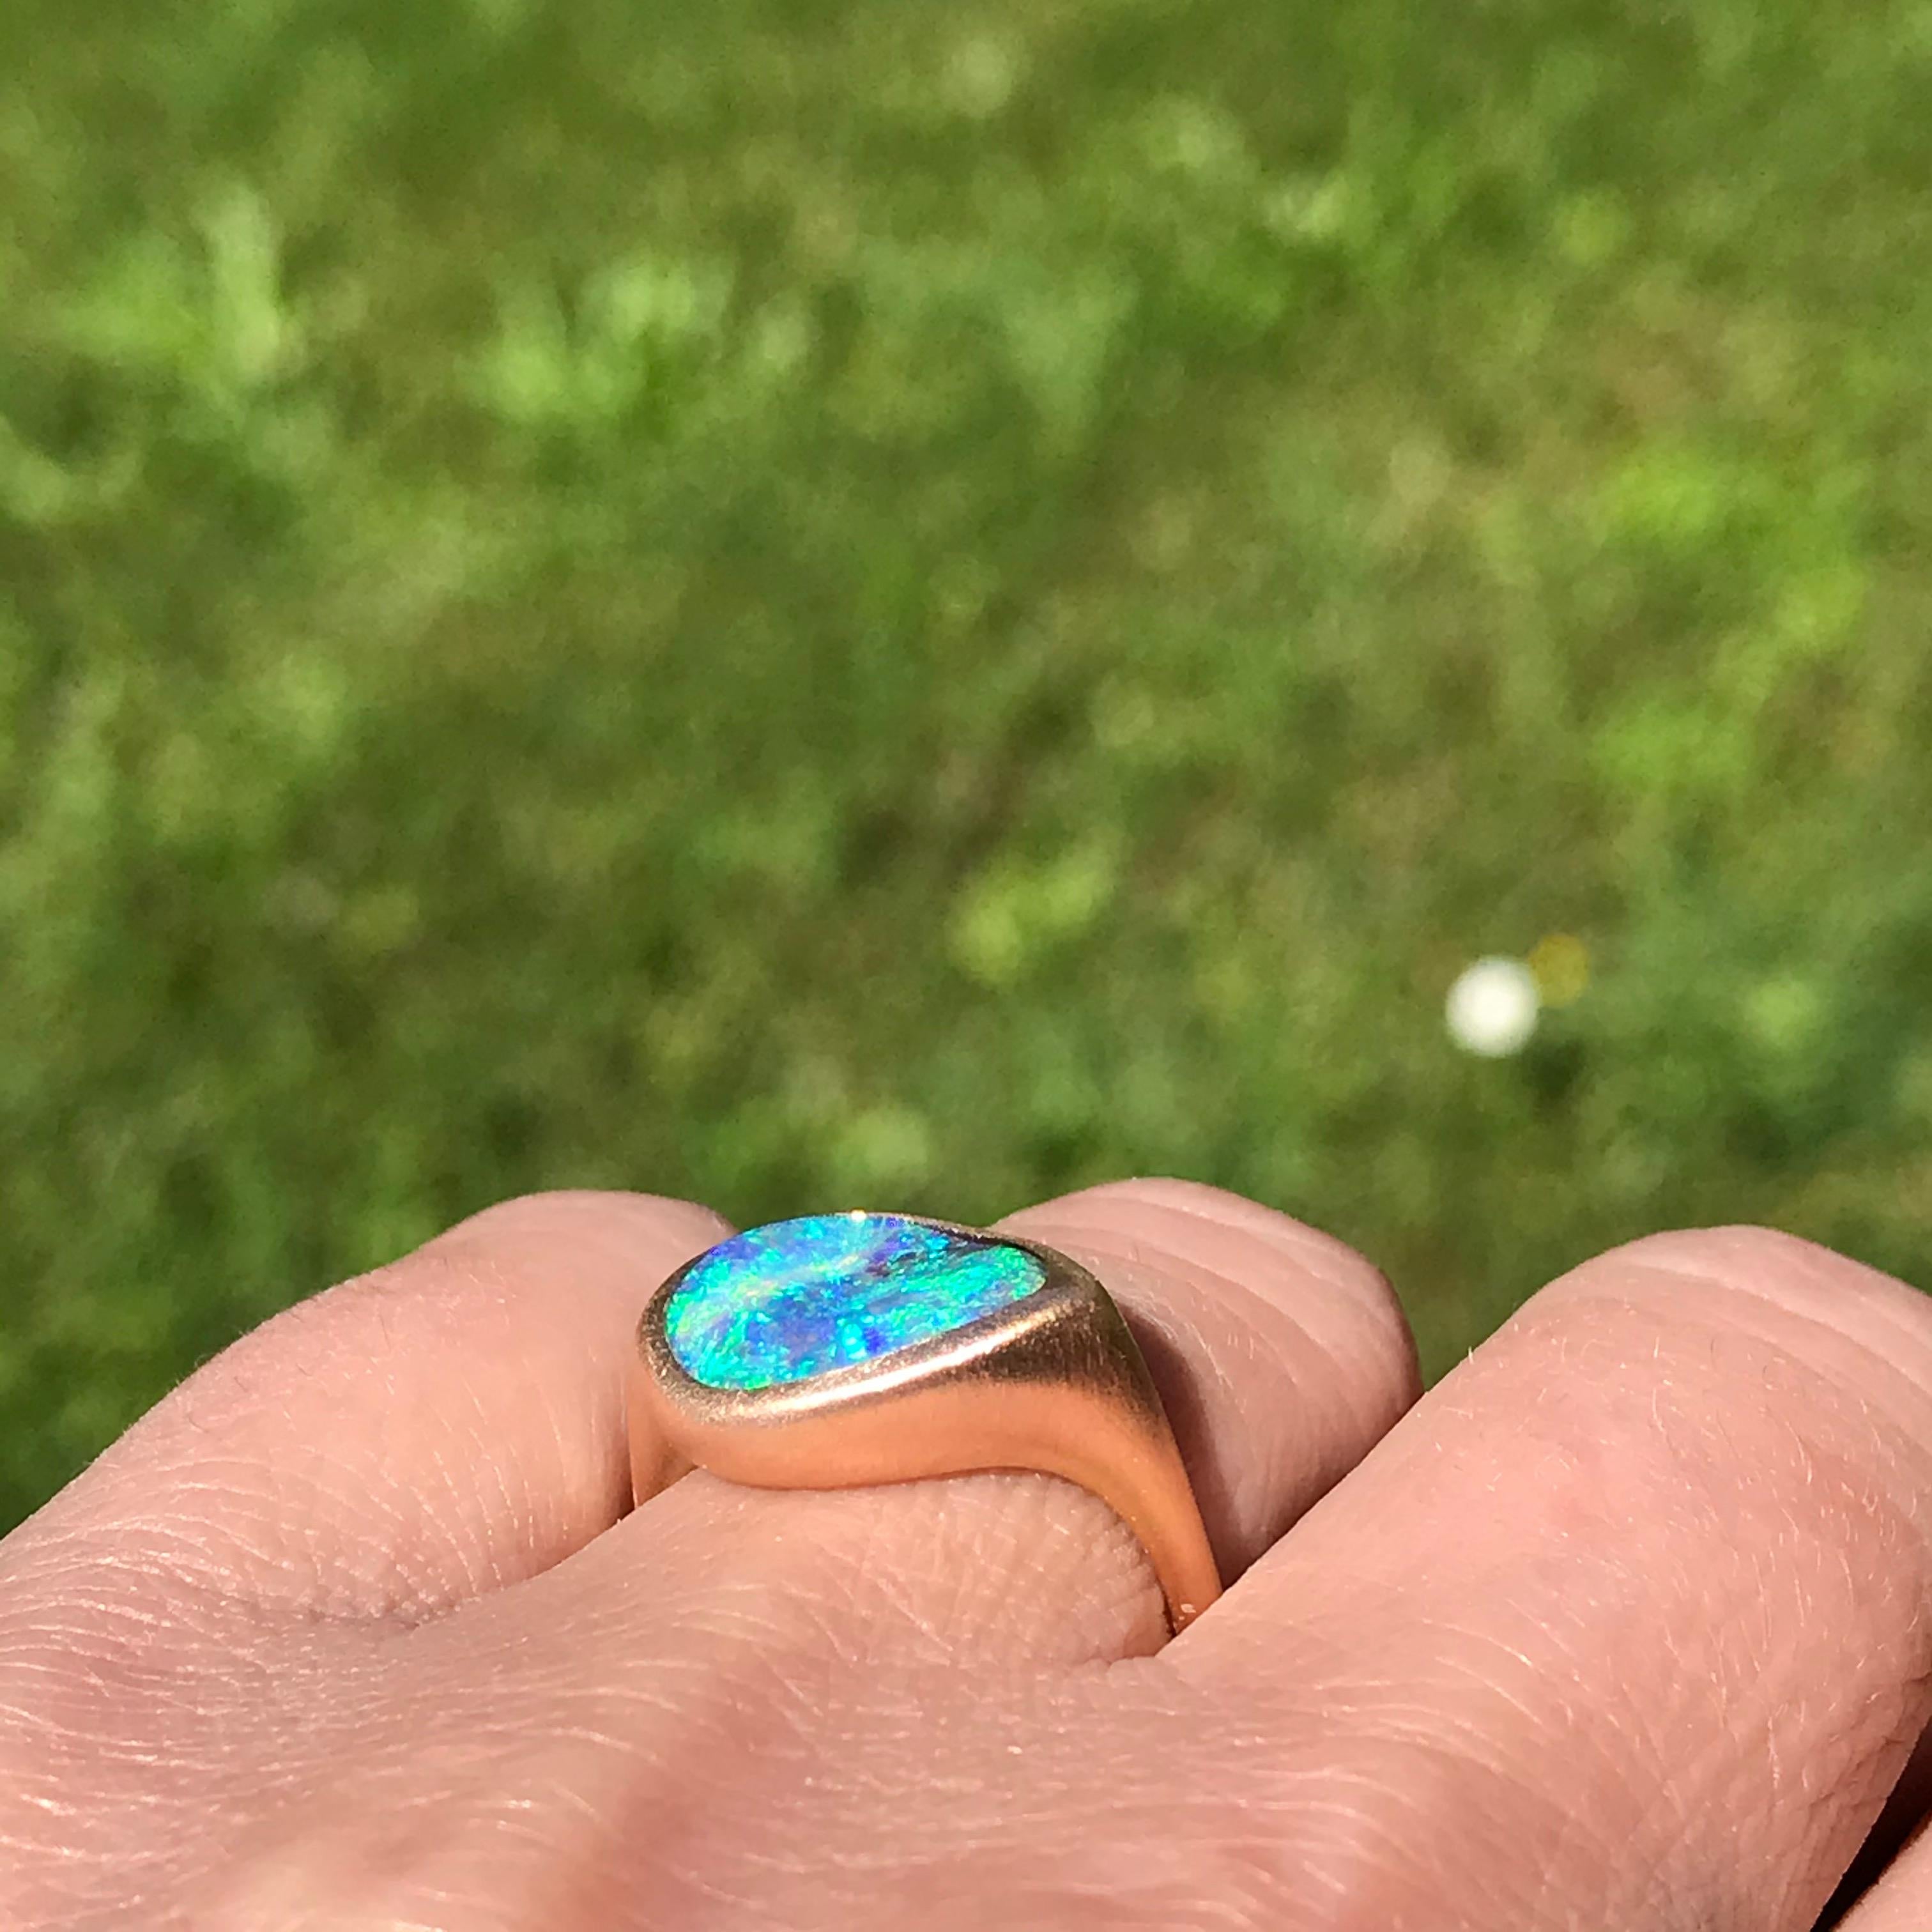 custom design engagement rings in sydney